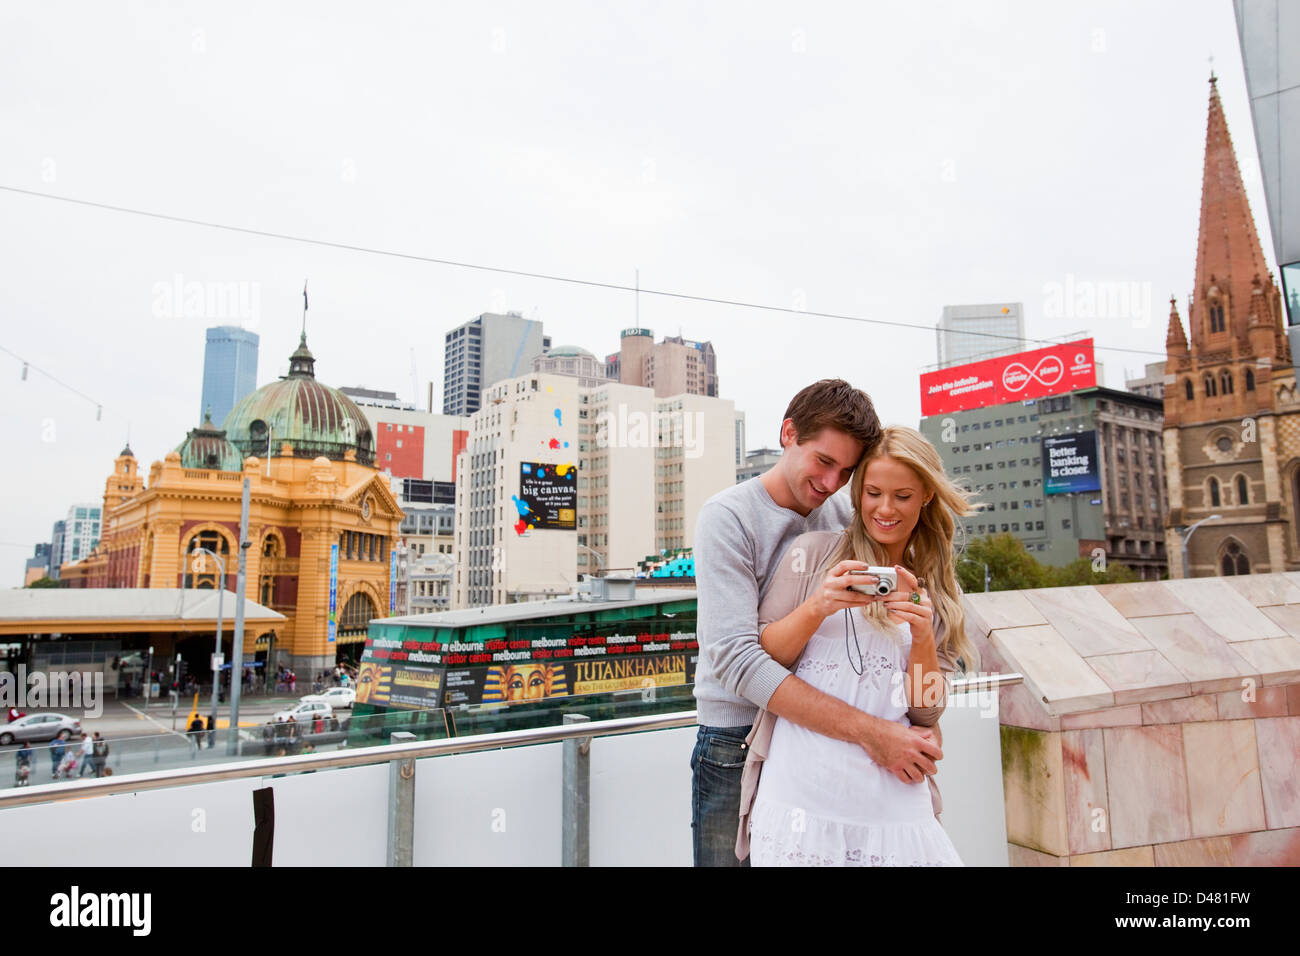 Jeune couple de visites dans la ville, regarder des images sur l'appareil-photo. Federation Square, Melbourne, Victoria, Australie Banque D'Images